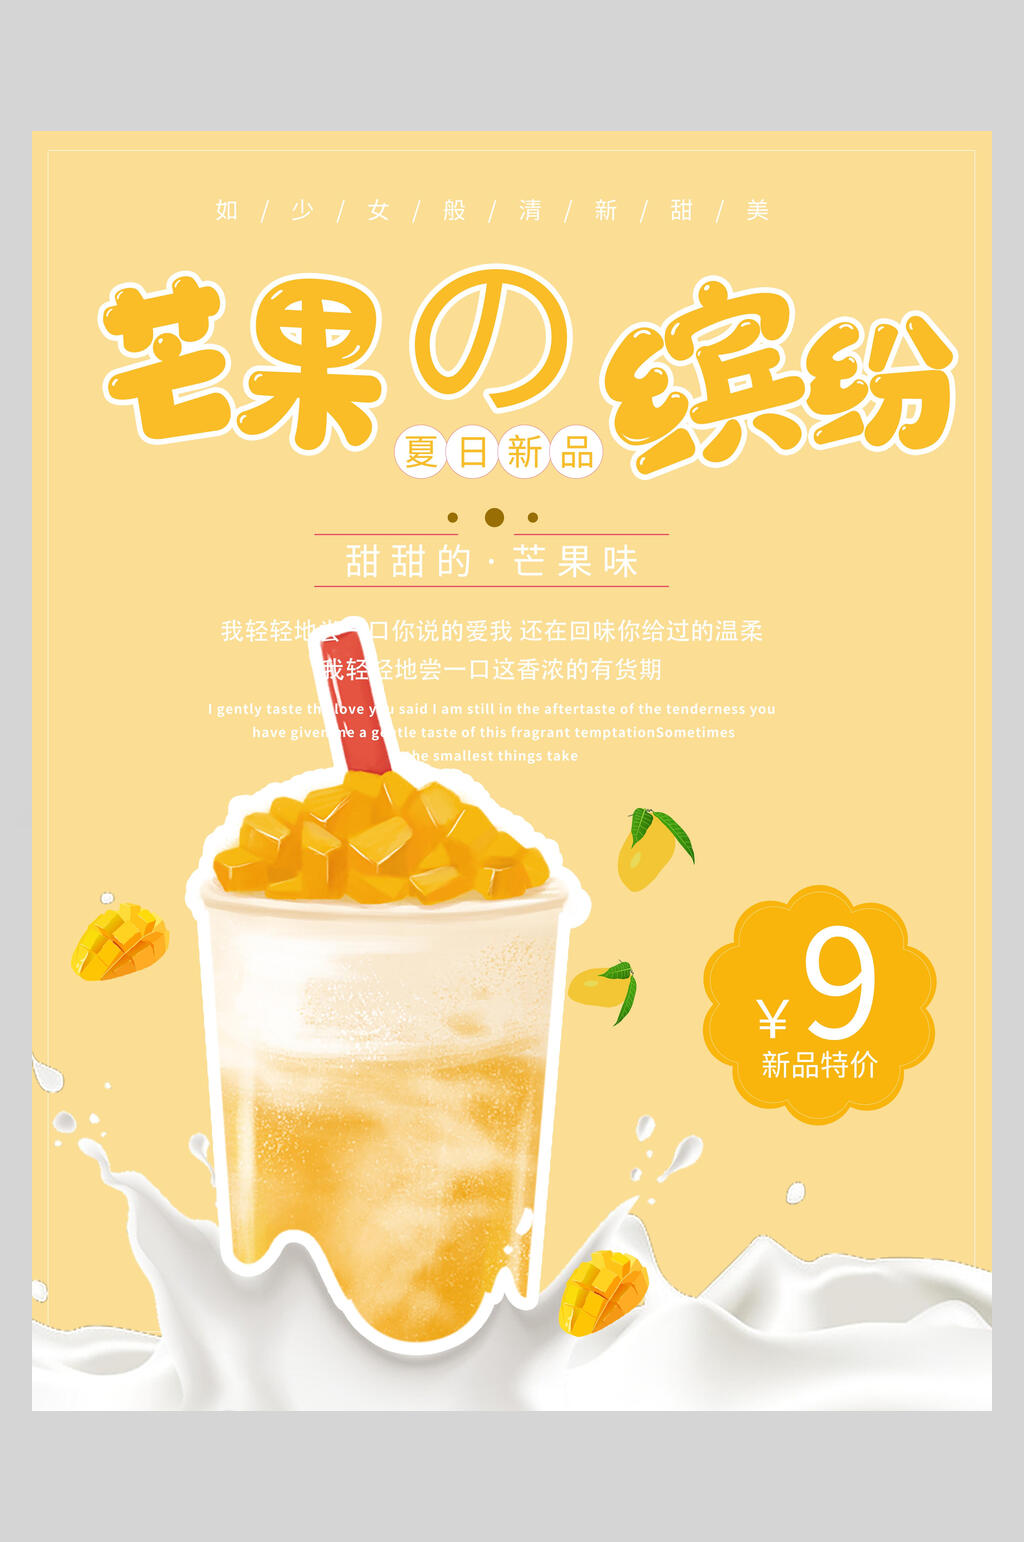 奶茶新品上市海报素材免费下载,本作品是由你好上传的原创平面广告